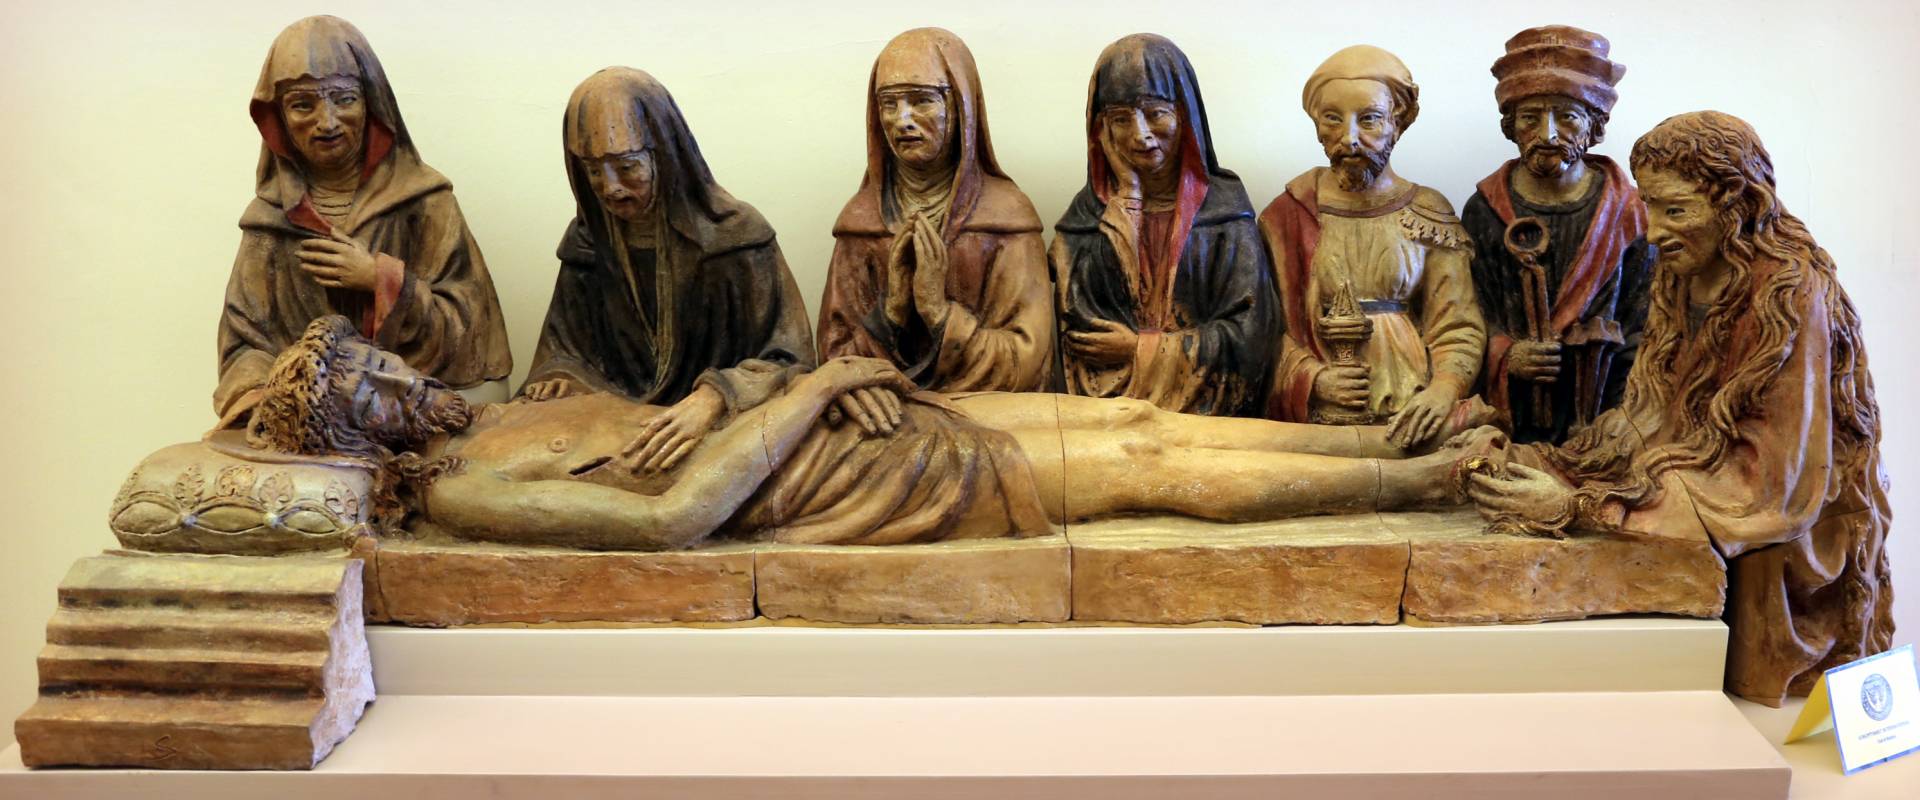 Michele da firenze, compianto sul cristo morto, 1443-48, 01 foto di Sailko